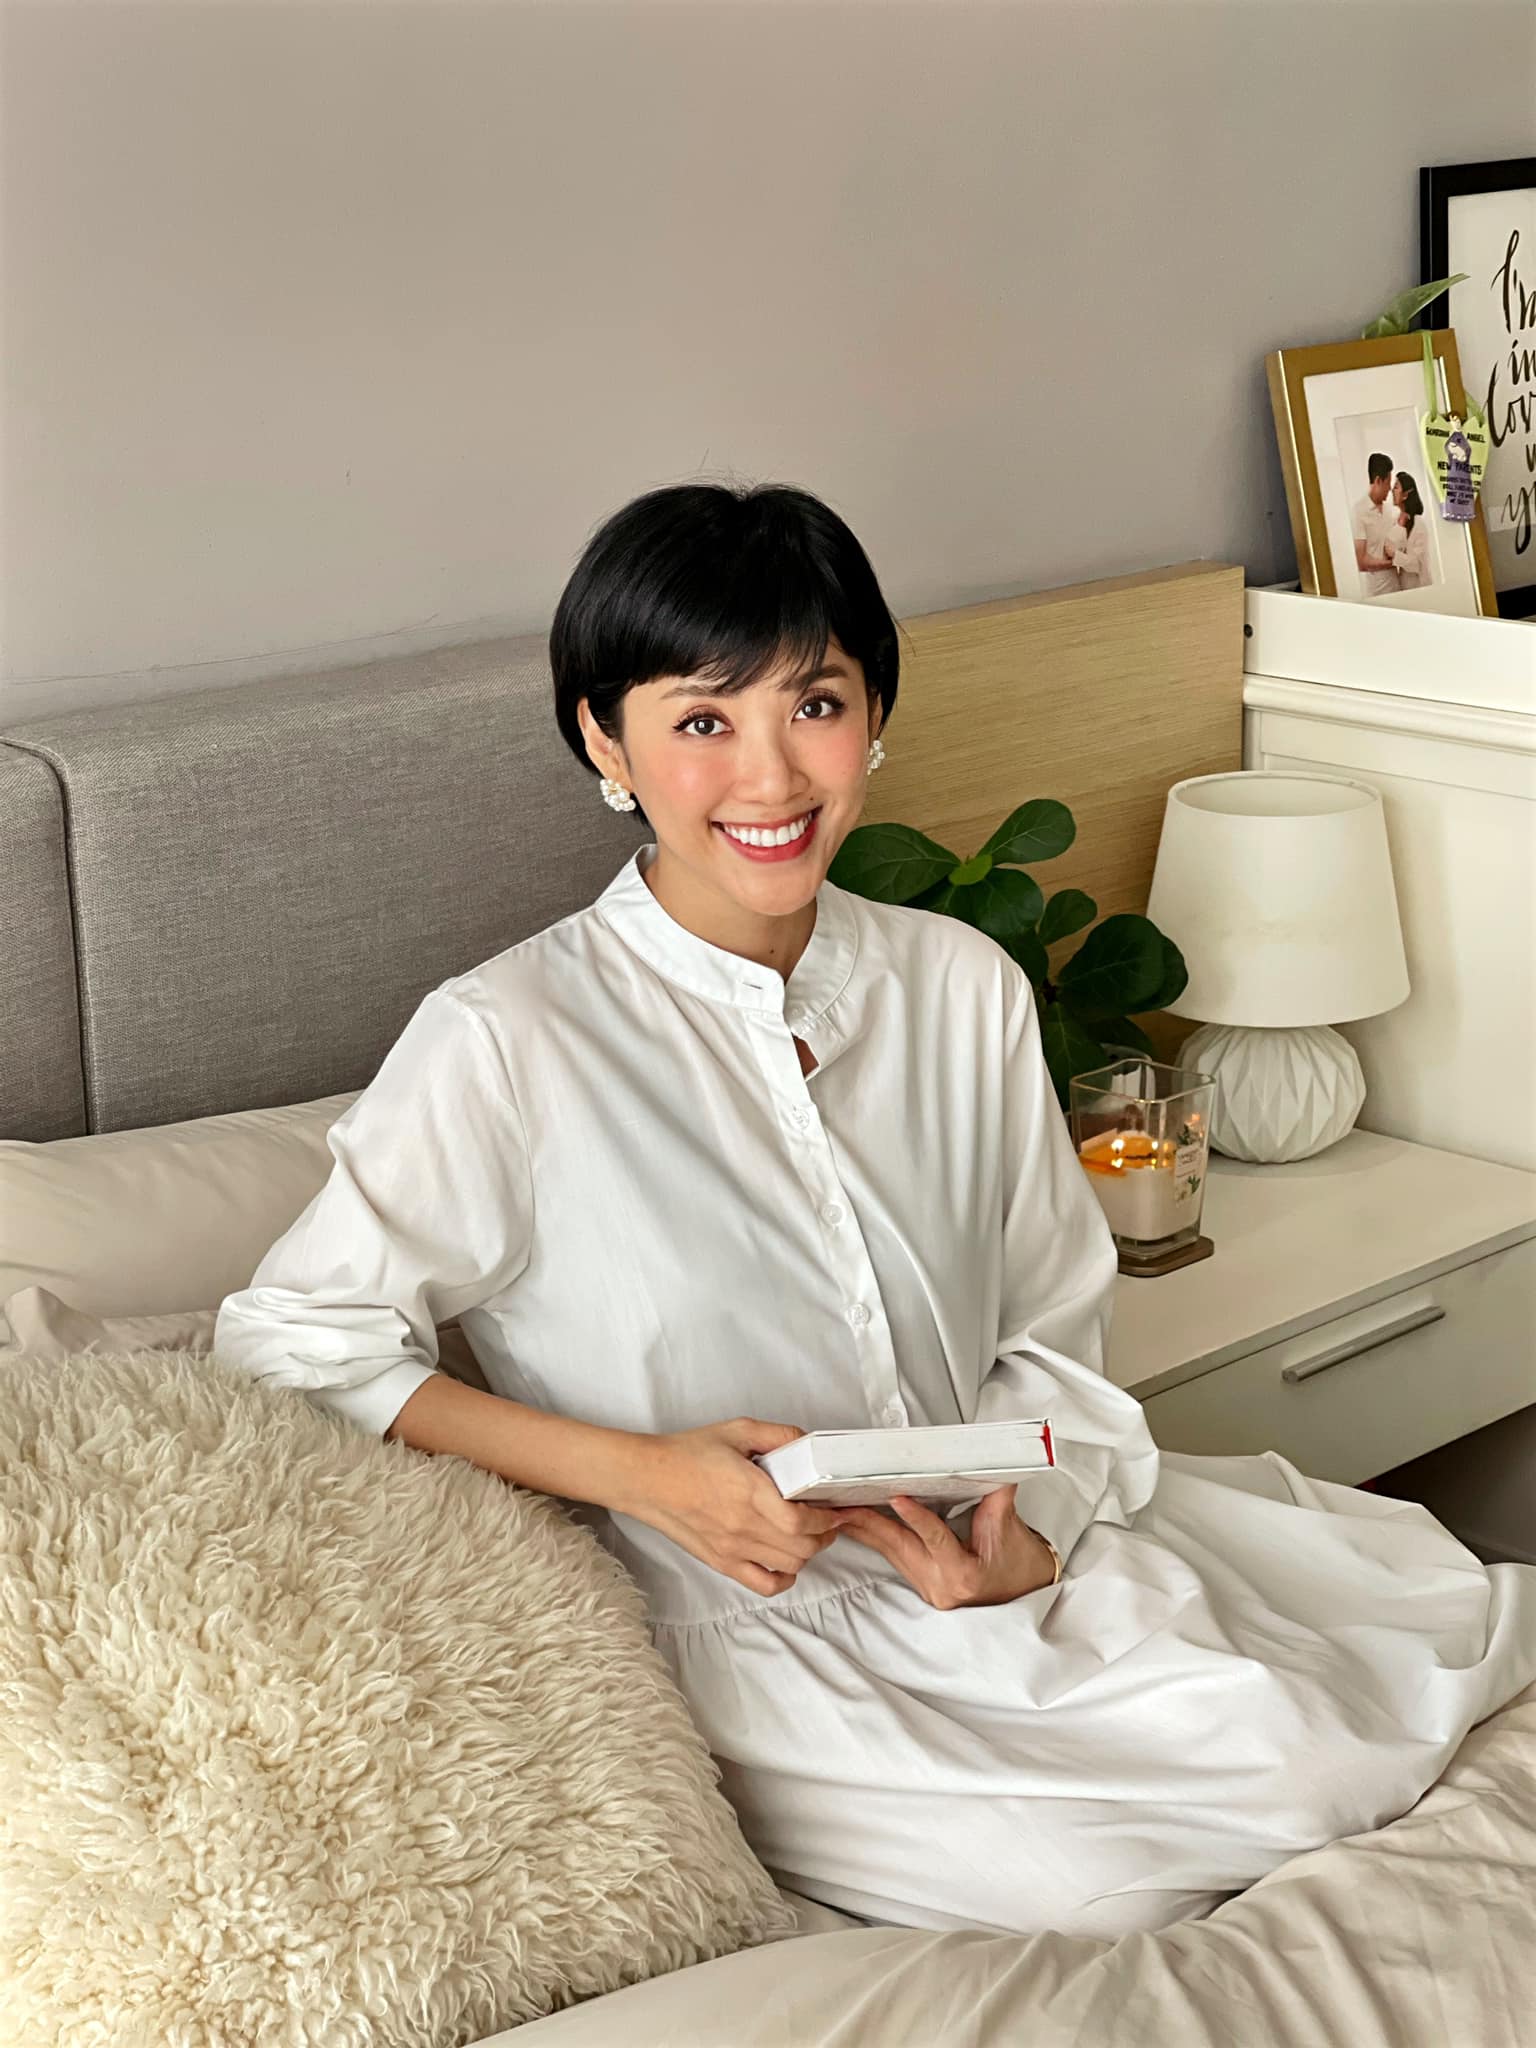 Yumi Dương chia sẻ cách uống collagen hiệu quả, hé lộ luôn 5 món chân ái để ngừa lão hóa - Ảnh 1.